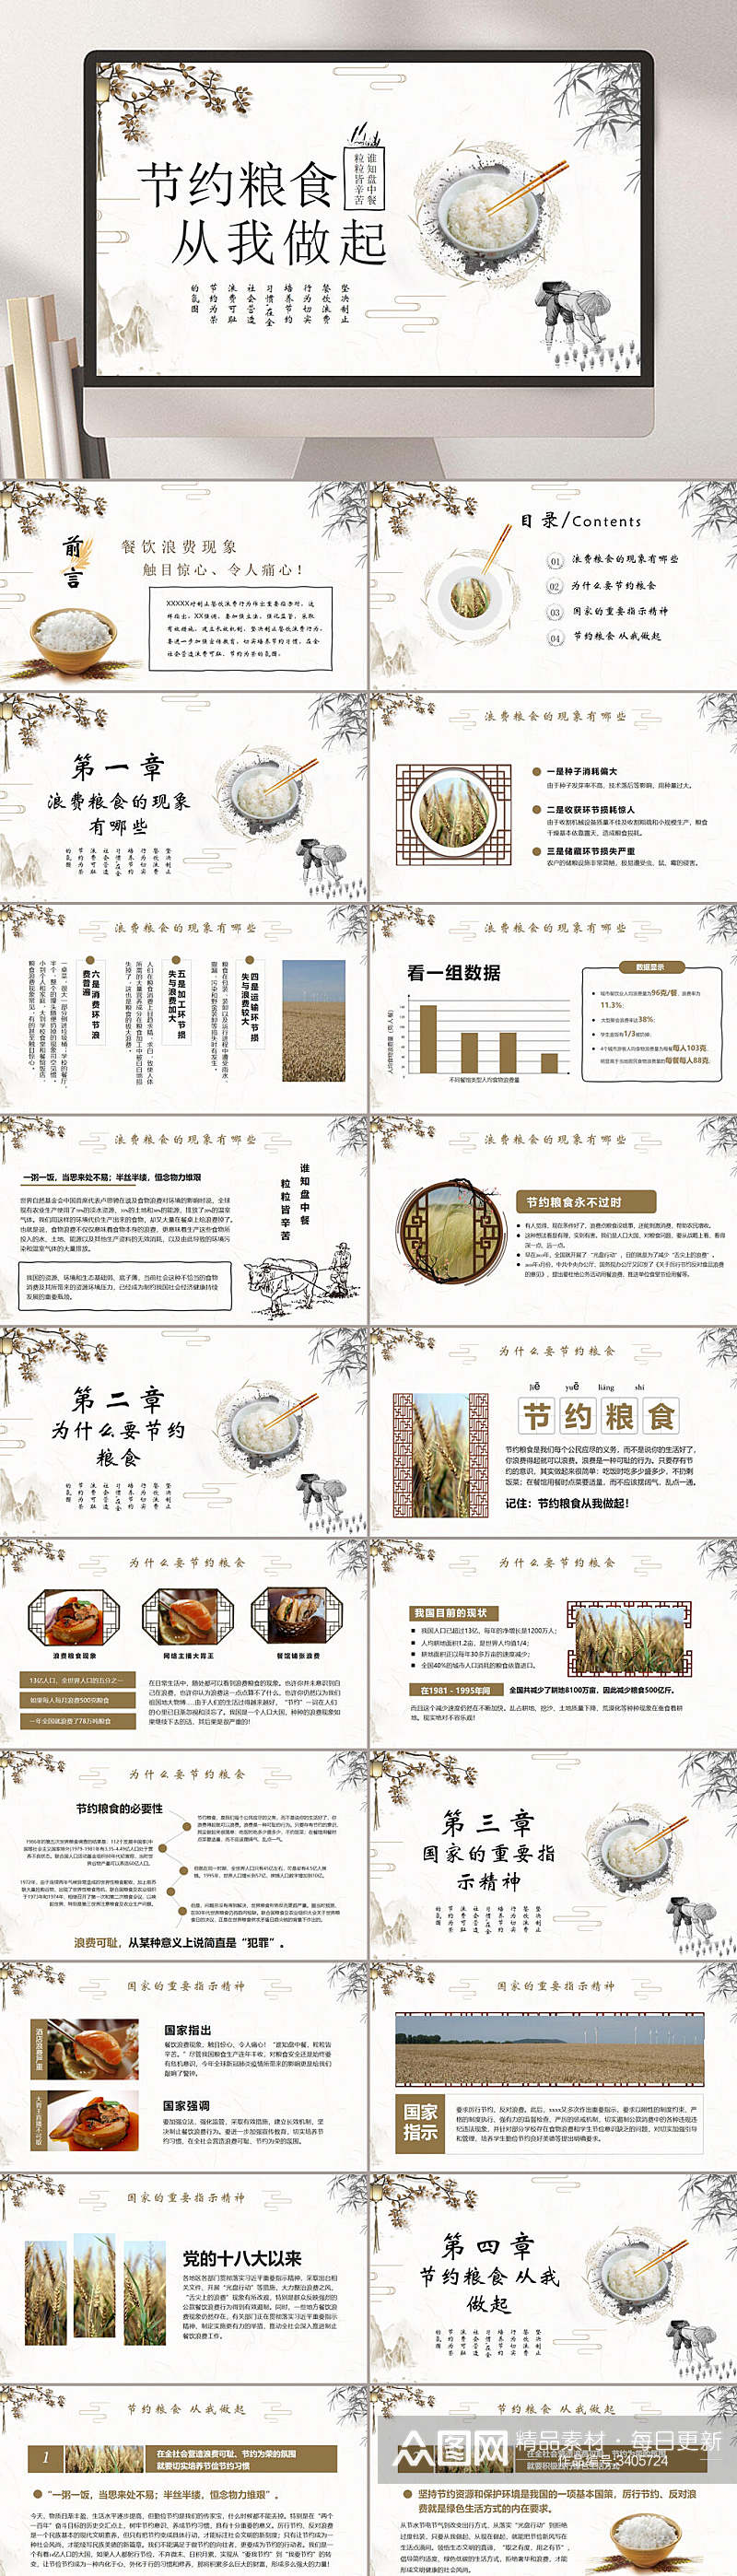 中式水墨画节约粮食光盘行动教育PPT素材